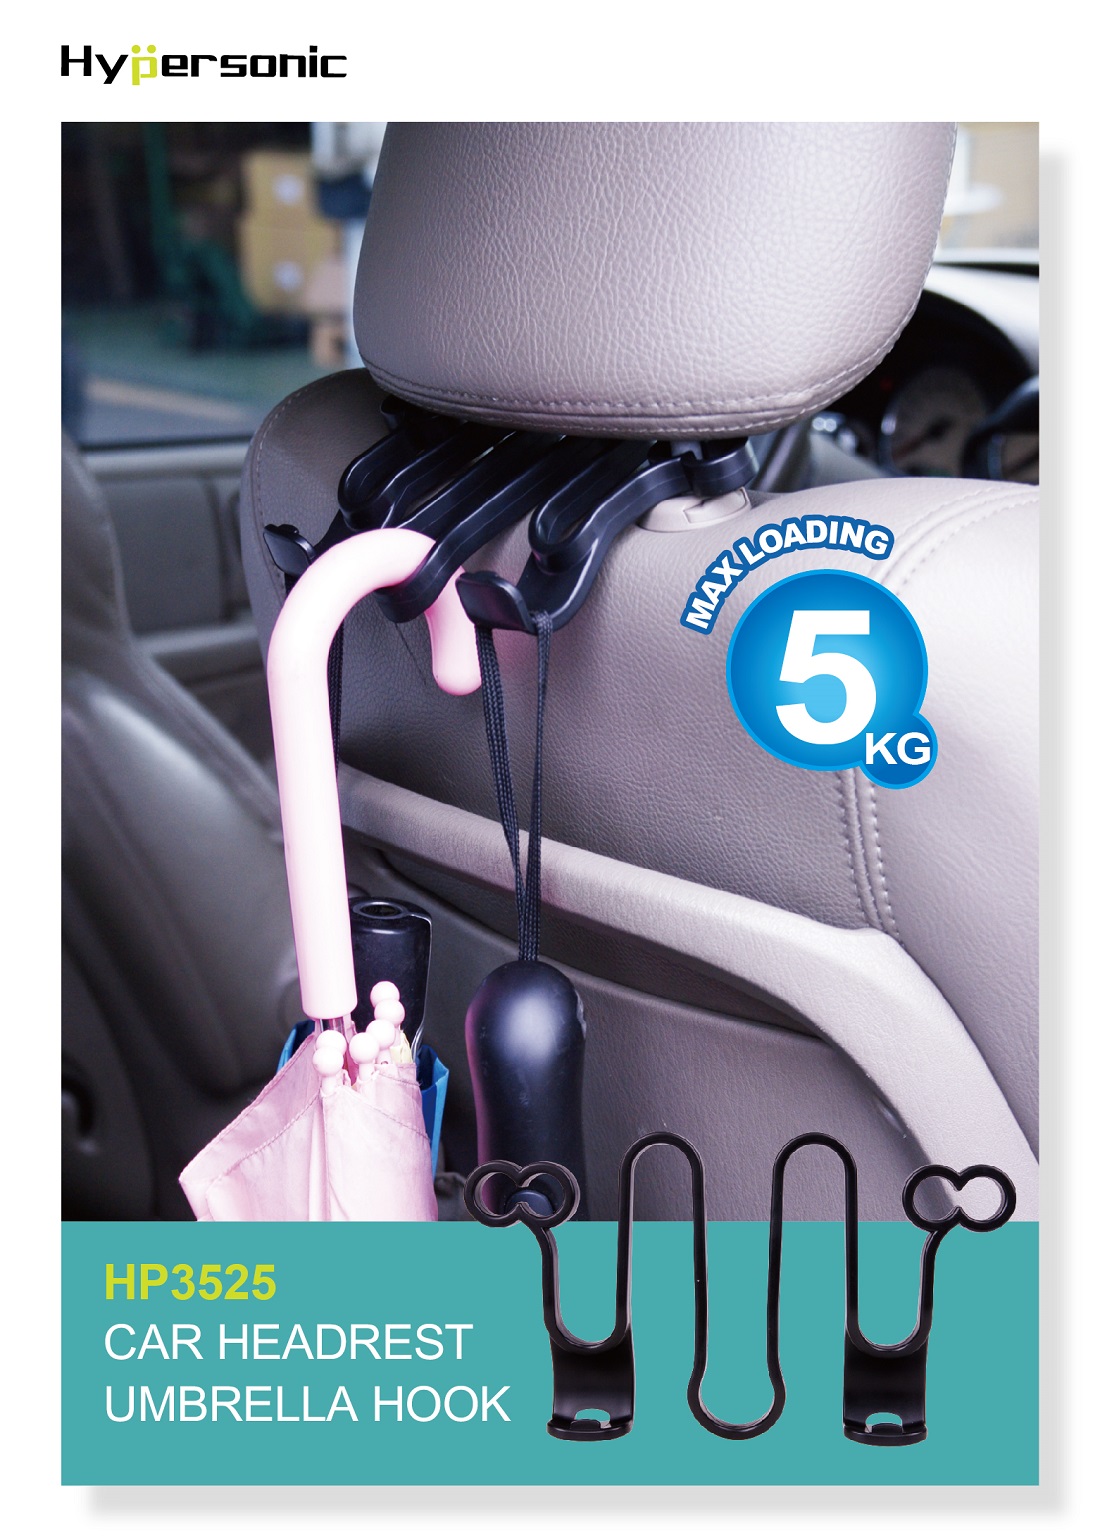 Car Headrest Hook Hanger Organizer HP3525